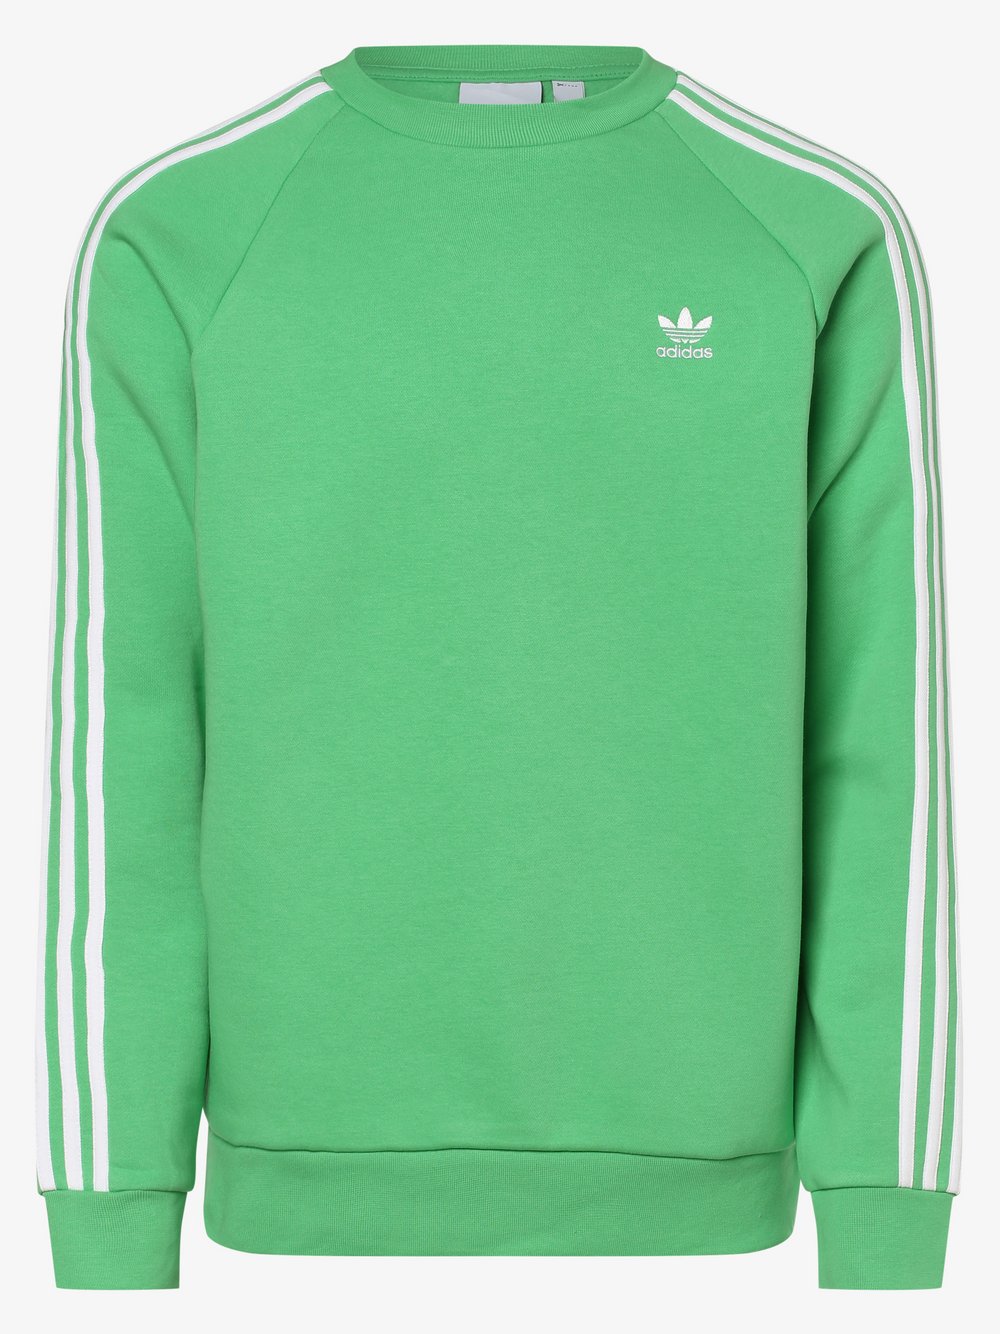 Adidas Originals - Męska bluza nierozpinana, zielony